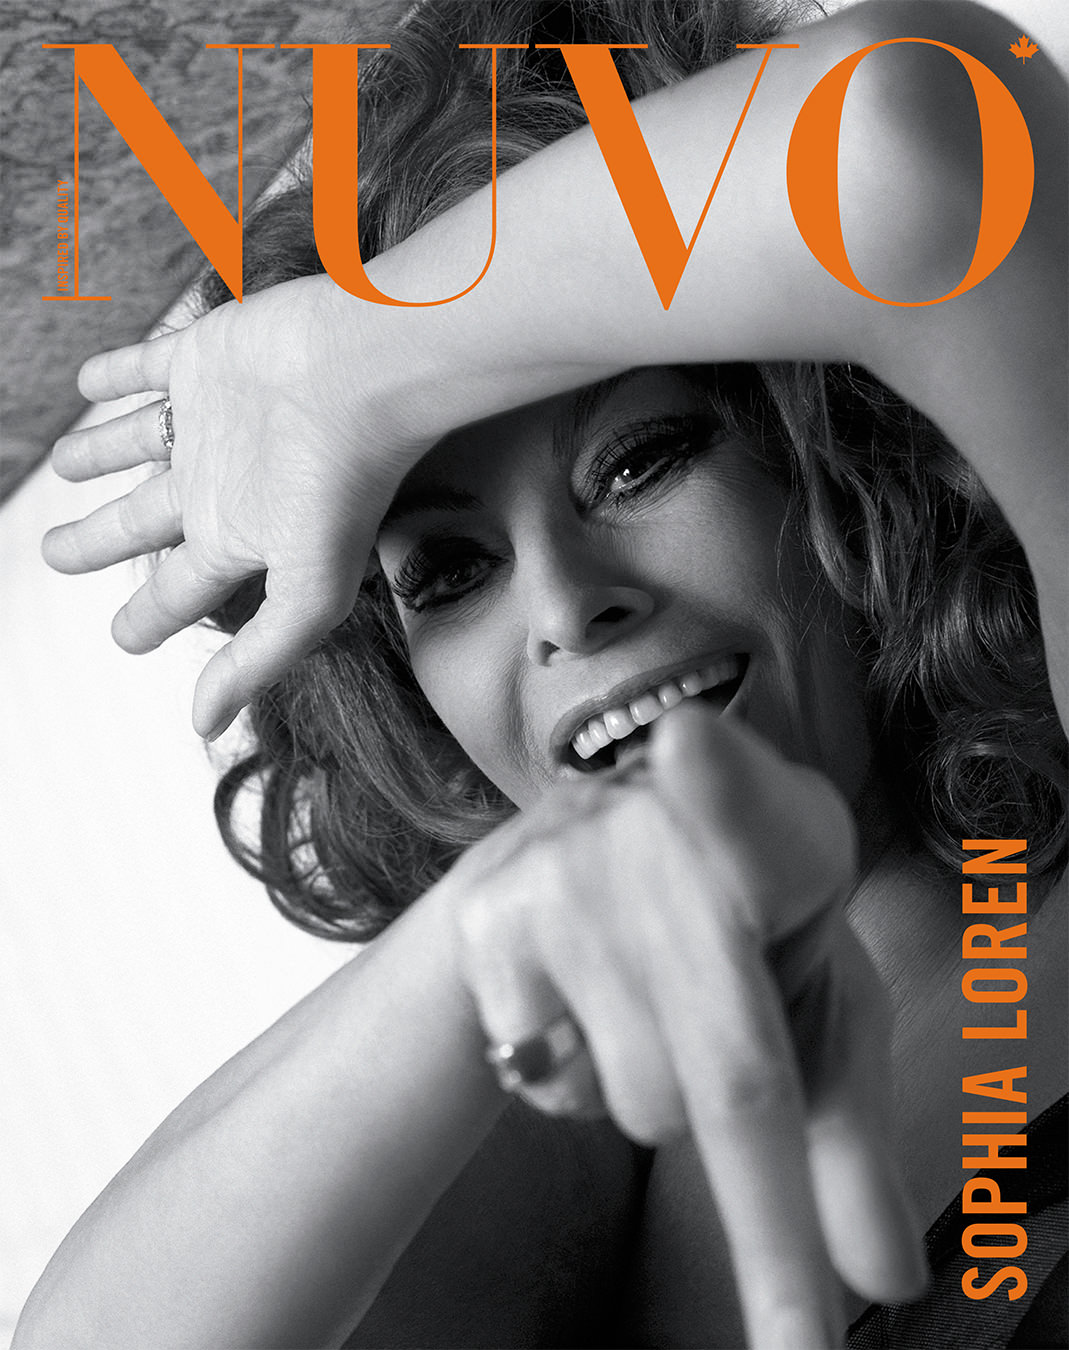 NUVO Magazine Spring 2007 Cover featuring Sophia Loren